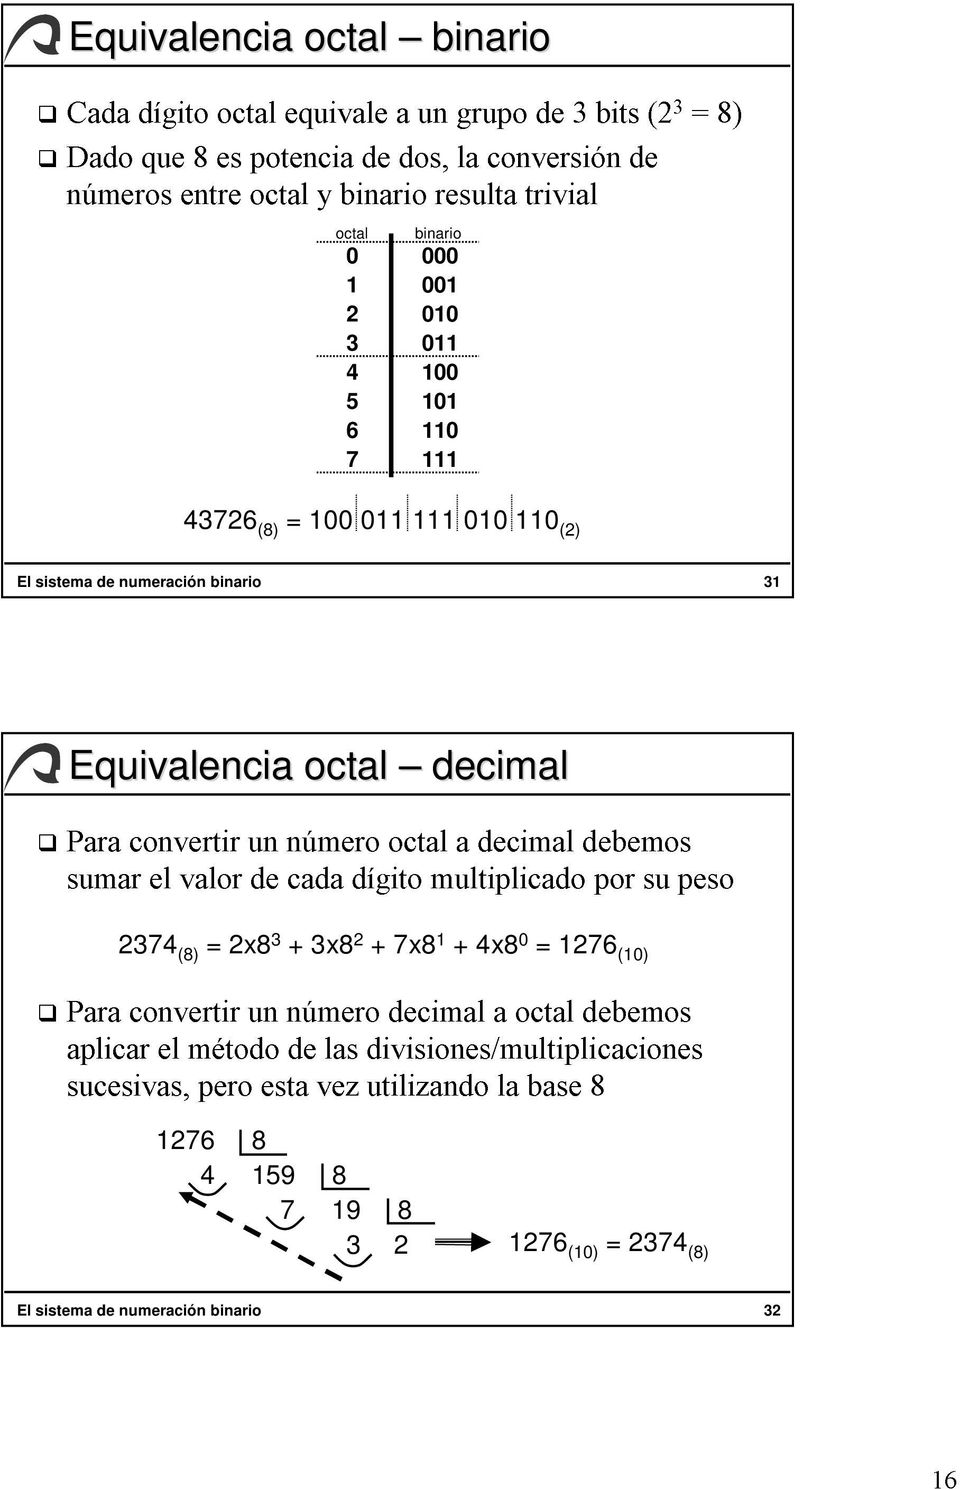 decimal debemos sucesivas, sumar convertir el el valor método pero un de esta número cada de vez las dígito divisiones/multiplicaciones utilizando decimal multiplicado a la octal